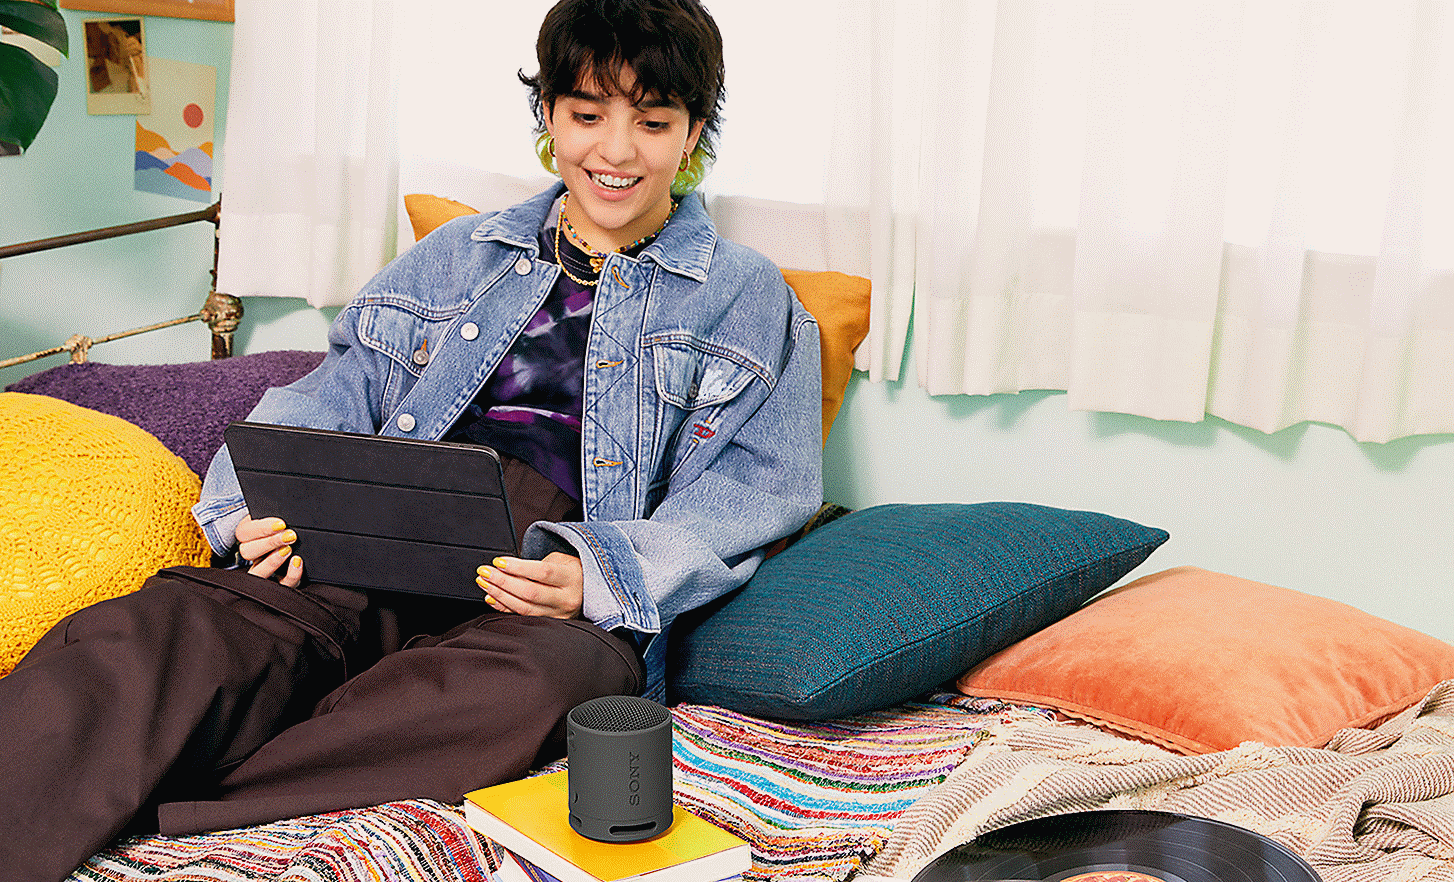 Abbildung einer Person mit einem Tablet auf dem Bett, die in einen auf einem Buch stehenden schwarzen SRS-XB100 Lautsprecher spricht